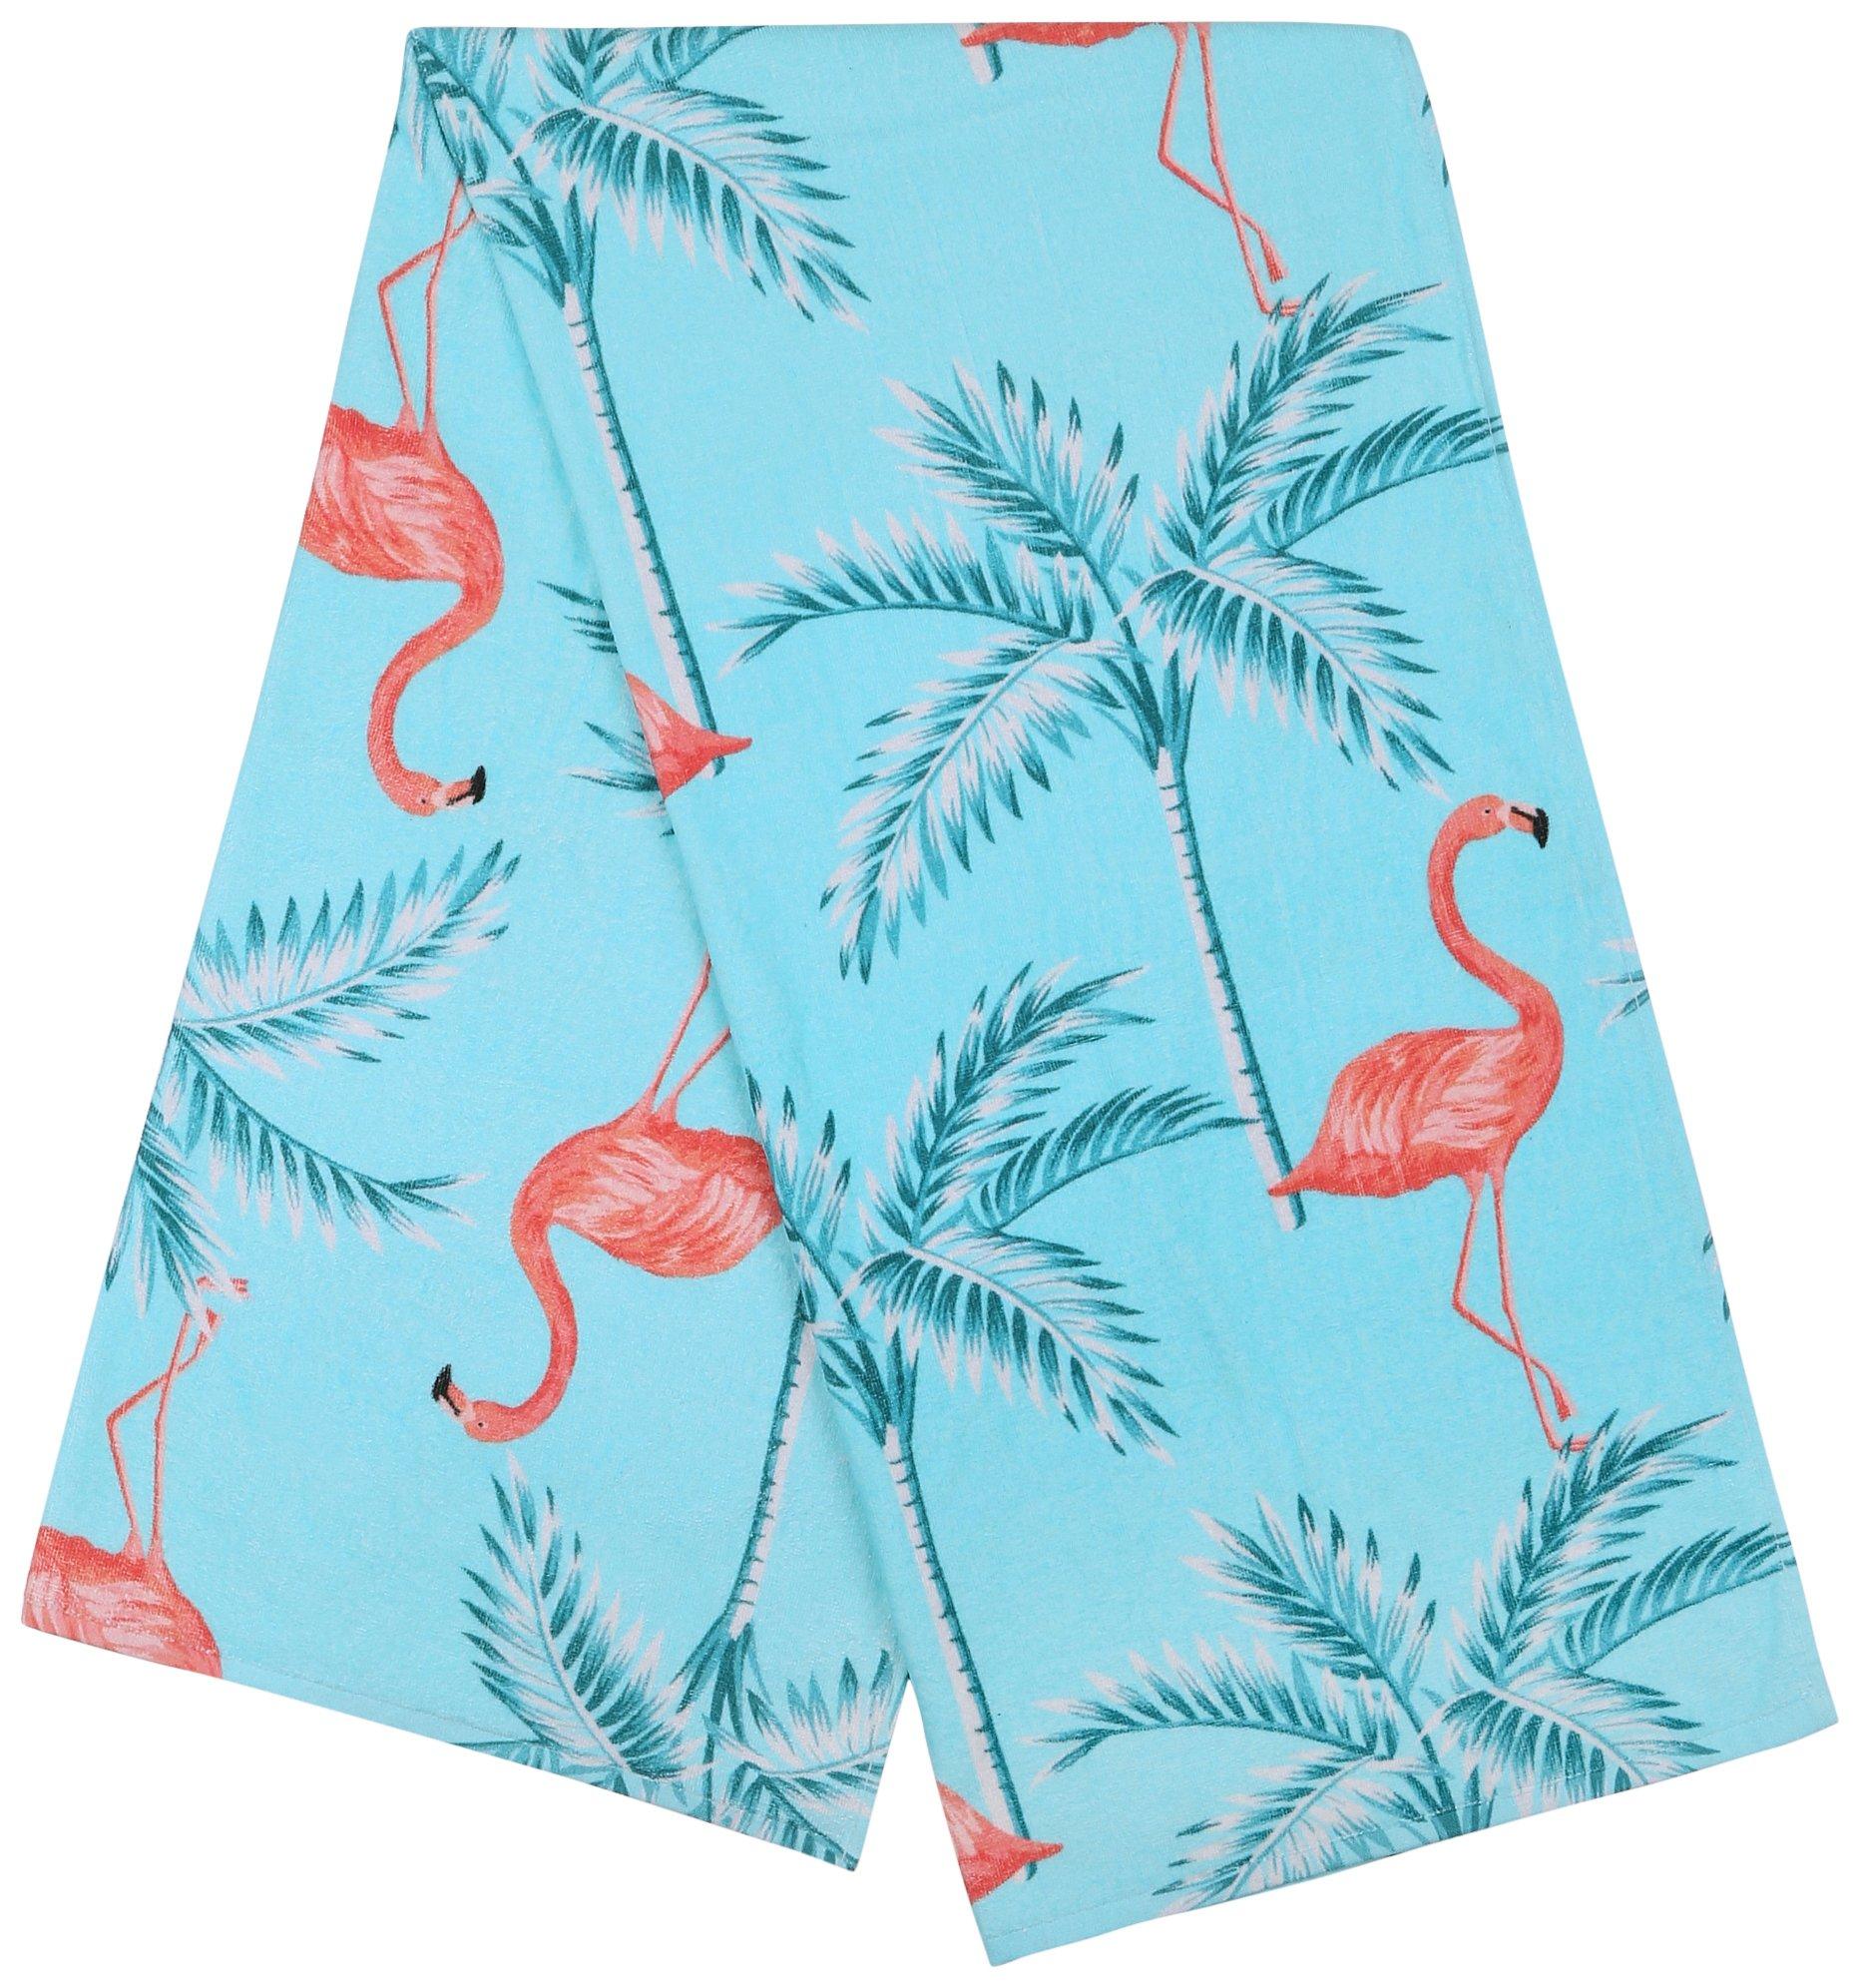 Tropix Flamingo Fun Beach Towel